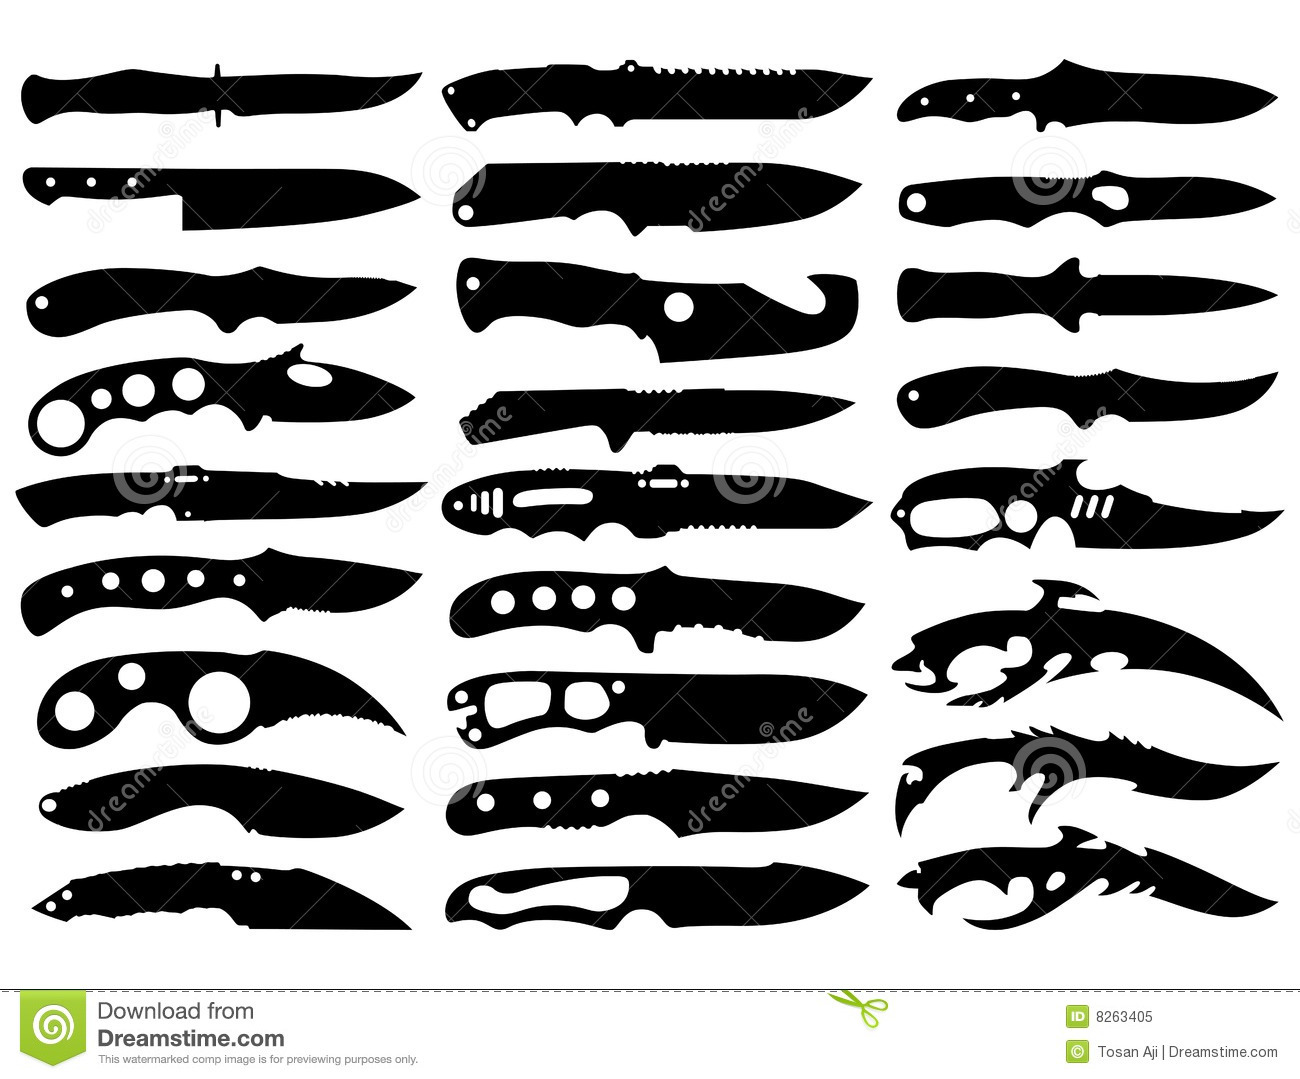 Как сделать нож, автор мастерская OmelArt studio